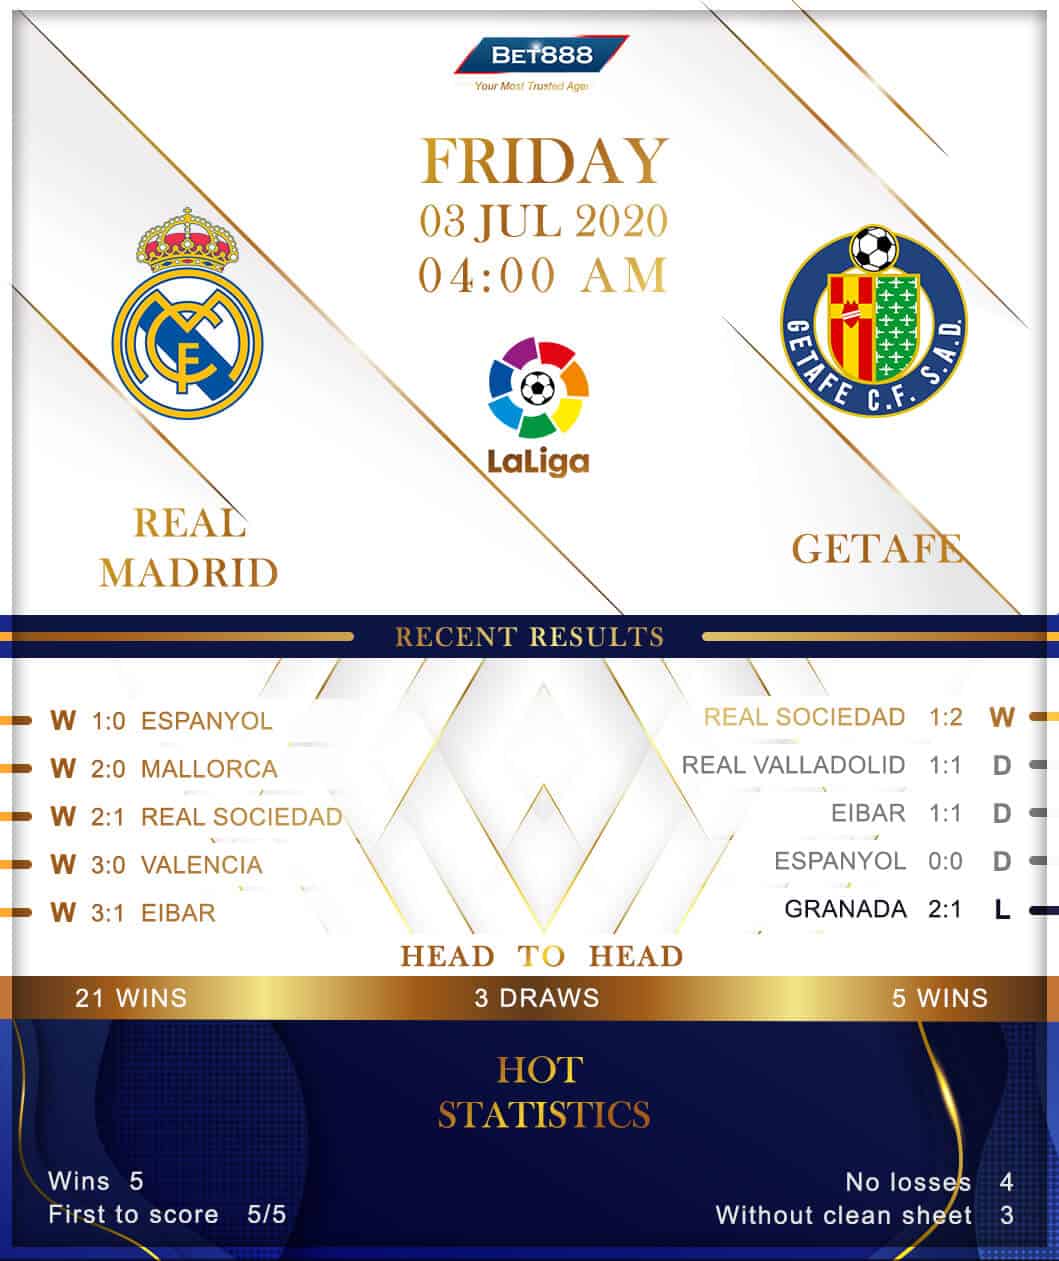 Real Madrid vs Getafe 03/07/20